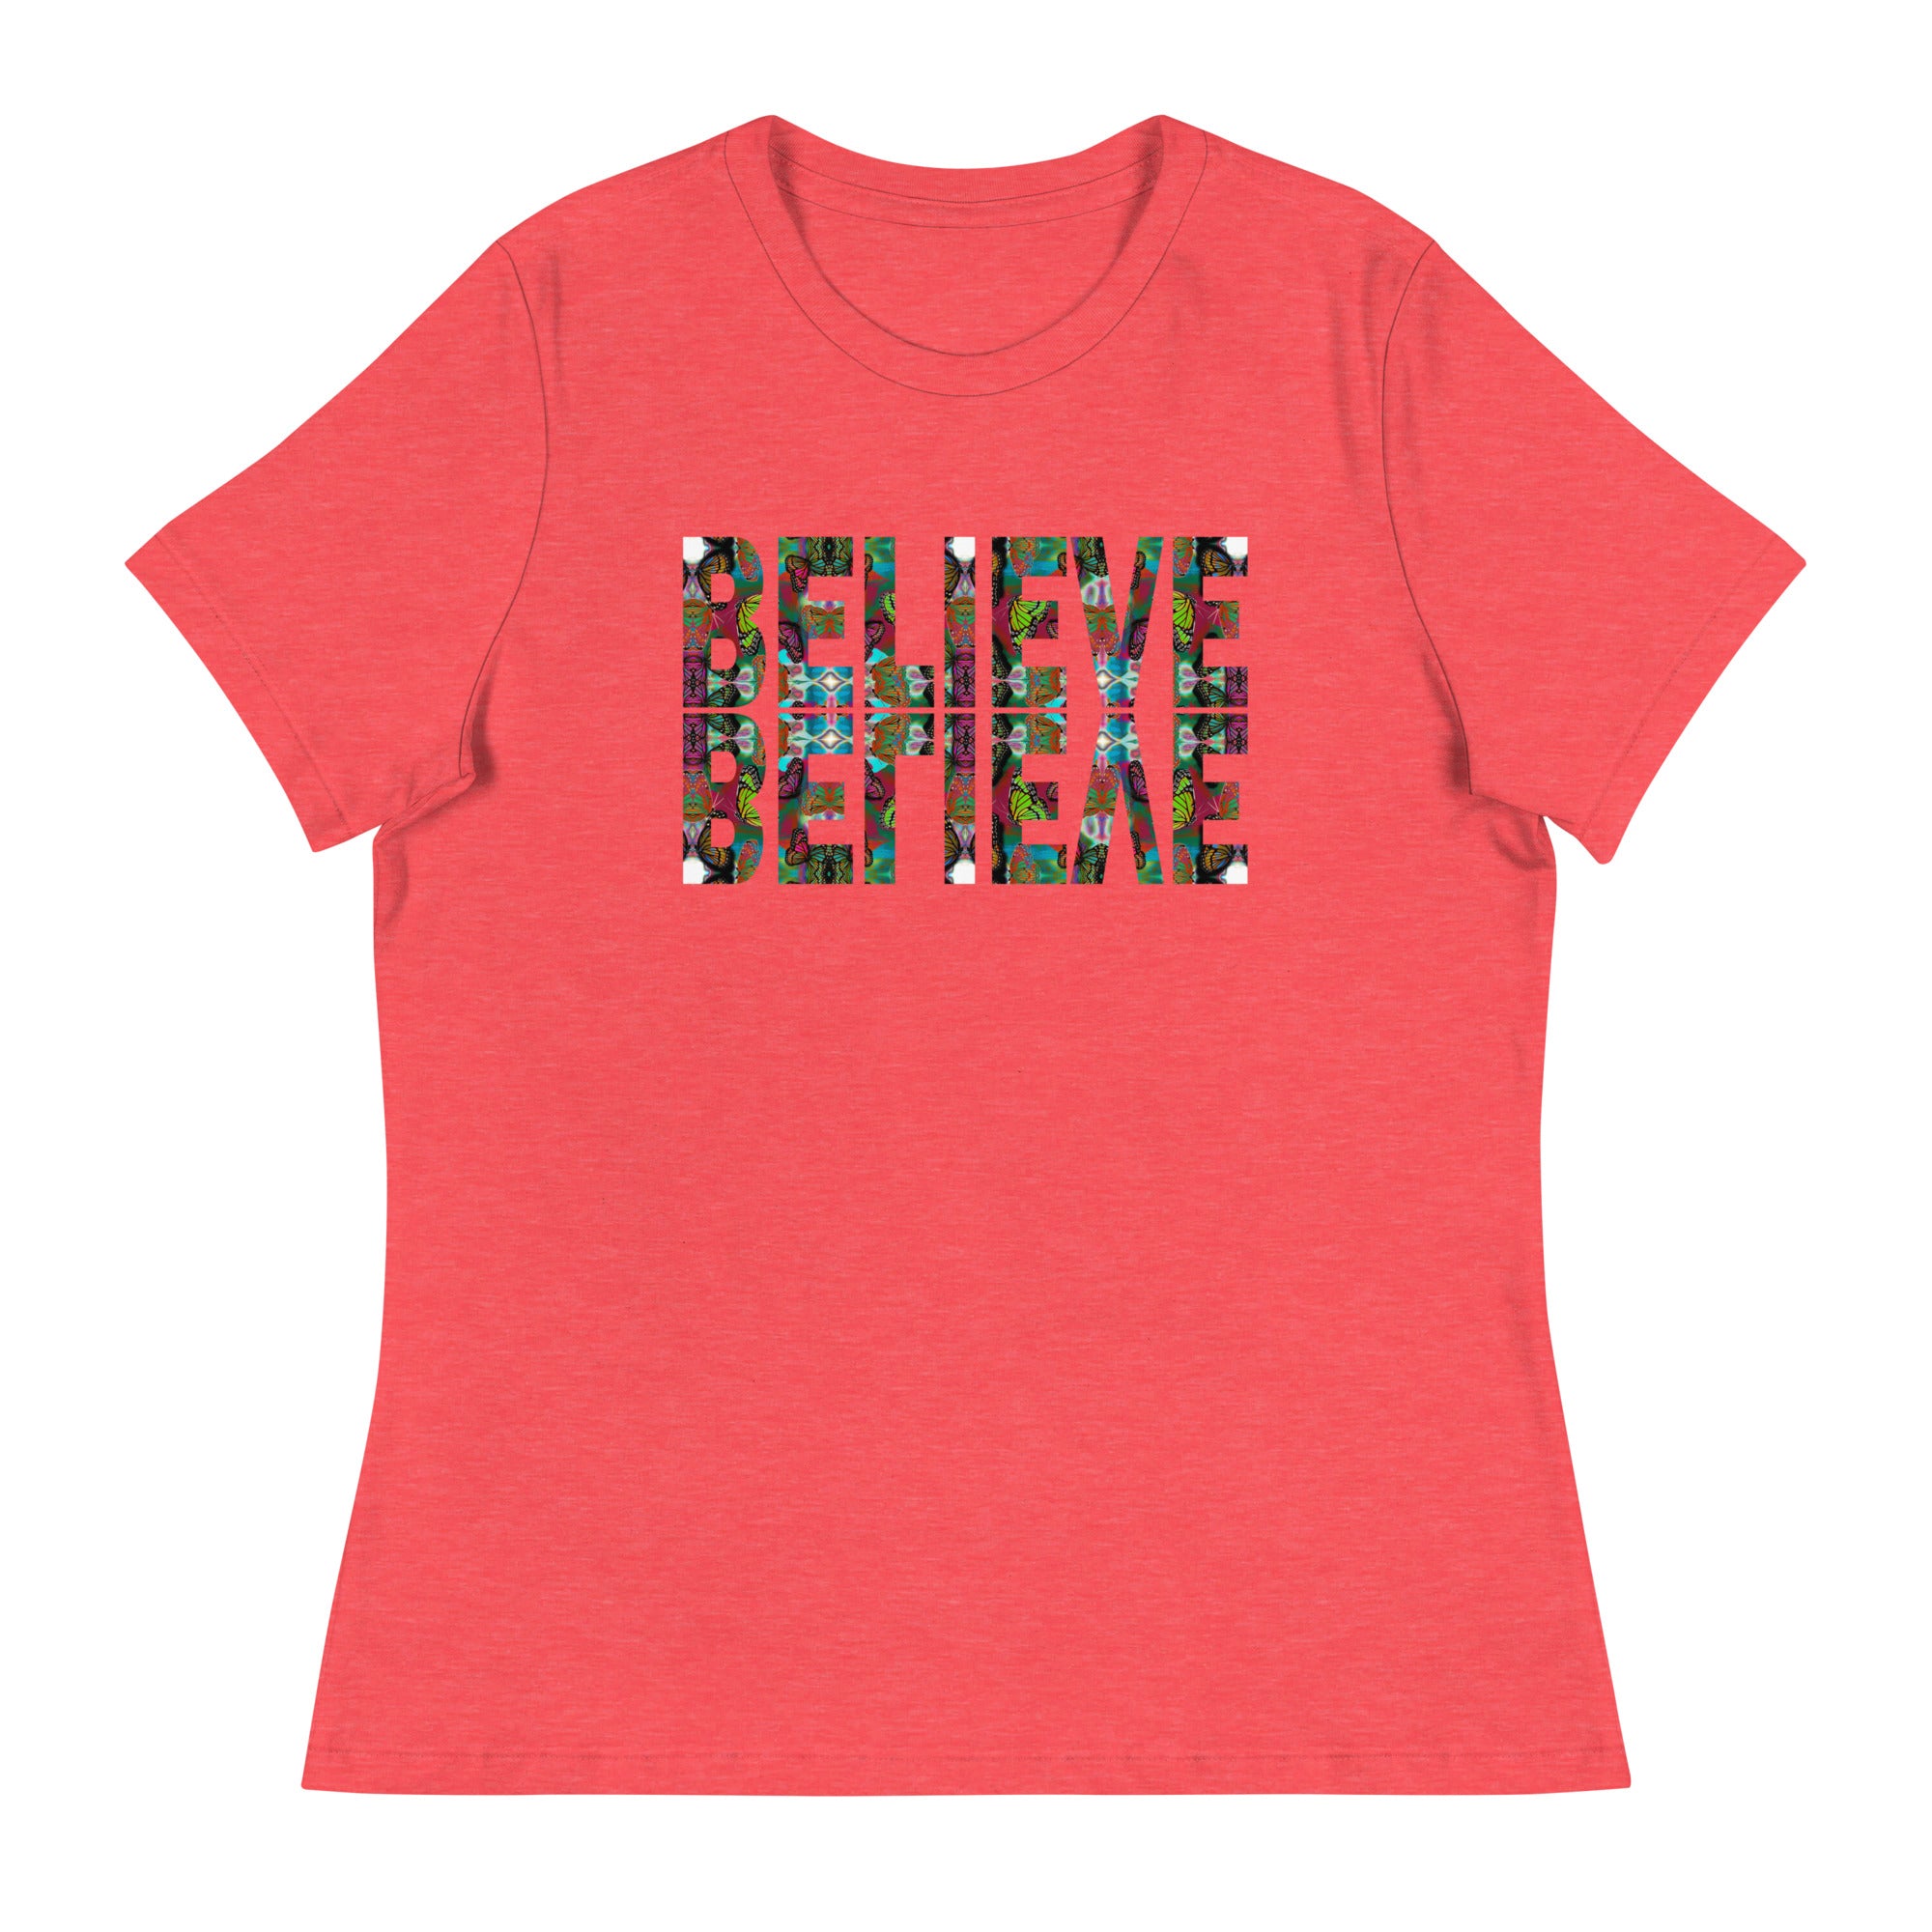 BELIEVE ~ Women's Graphic T-Shirt, Butterfly Word Art Short Sleeve Top